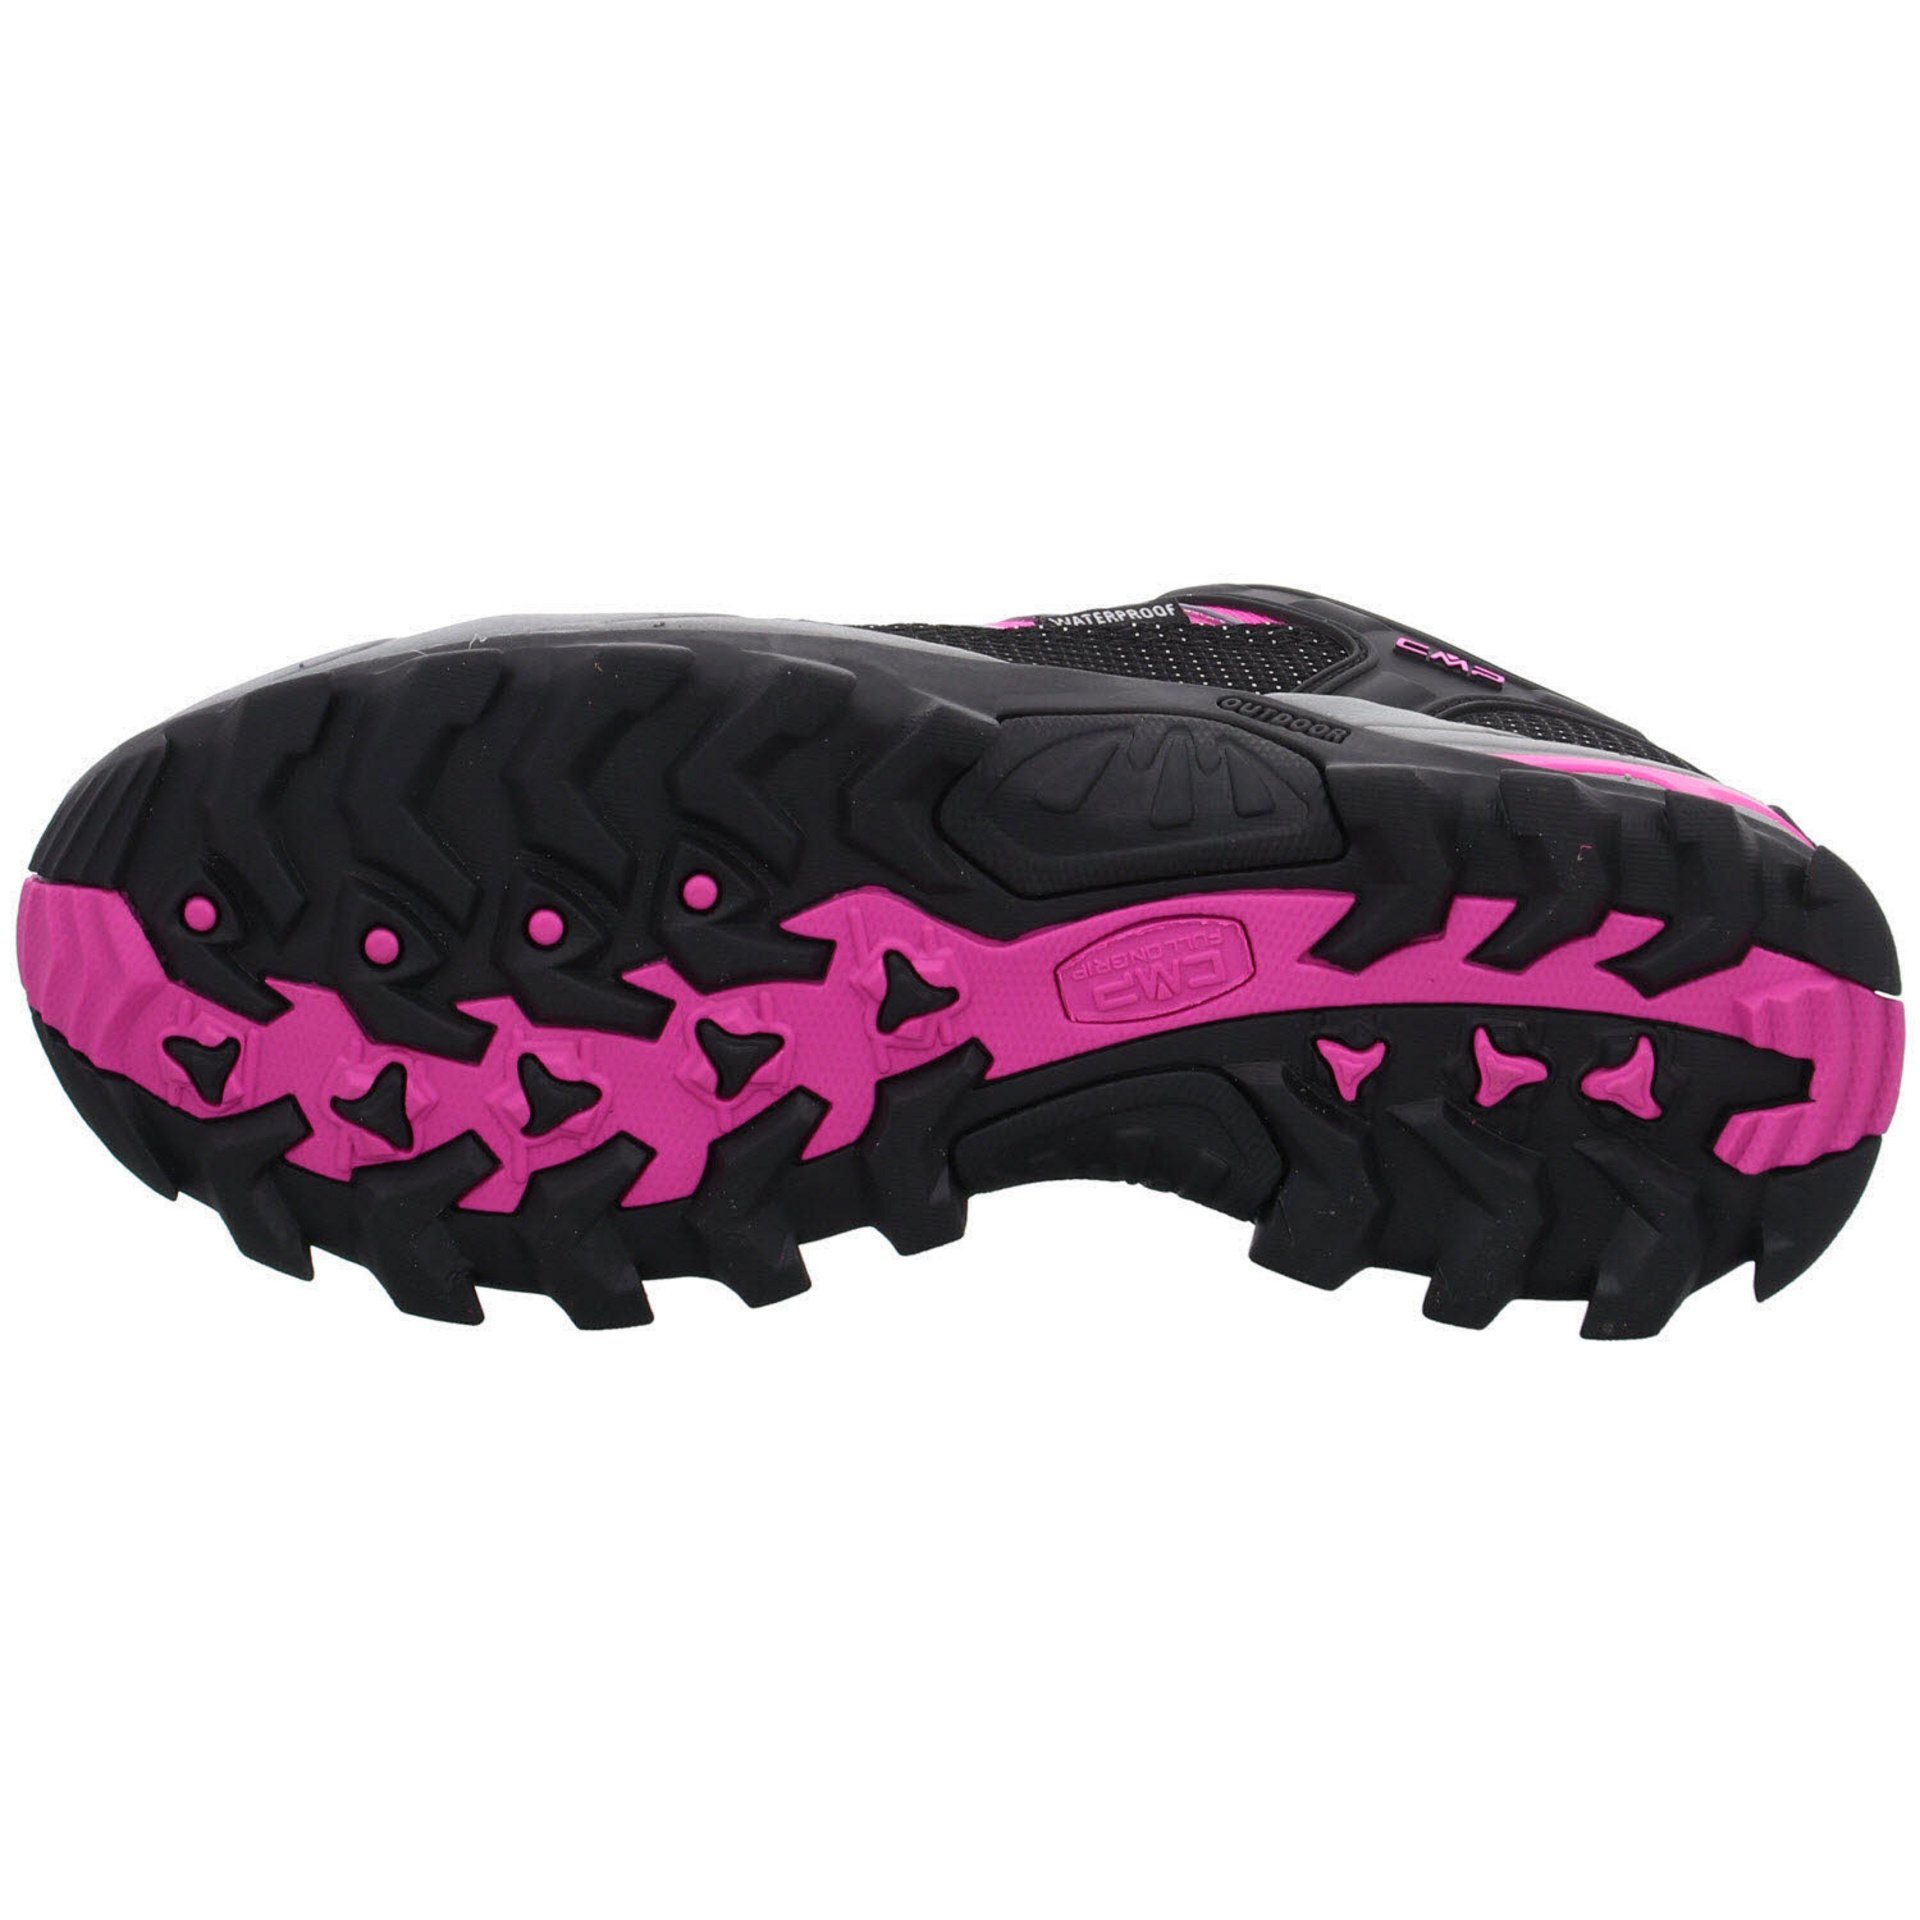 (03201886) Damen Outdoorschuh pink Low Leder-/Textilkombination Schuhe Rigel Outdoor Outdoorschuh CMP fluo-b.blue